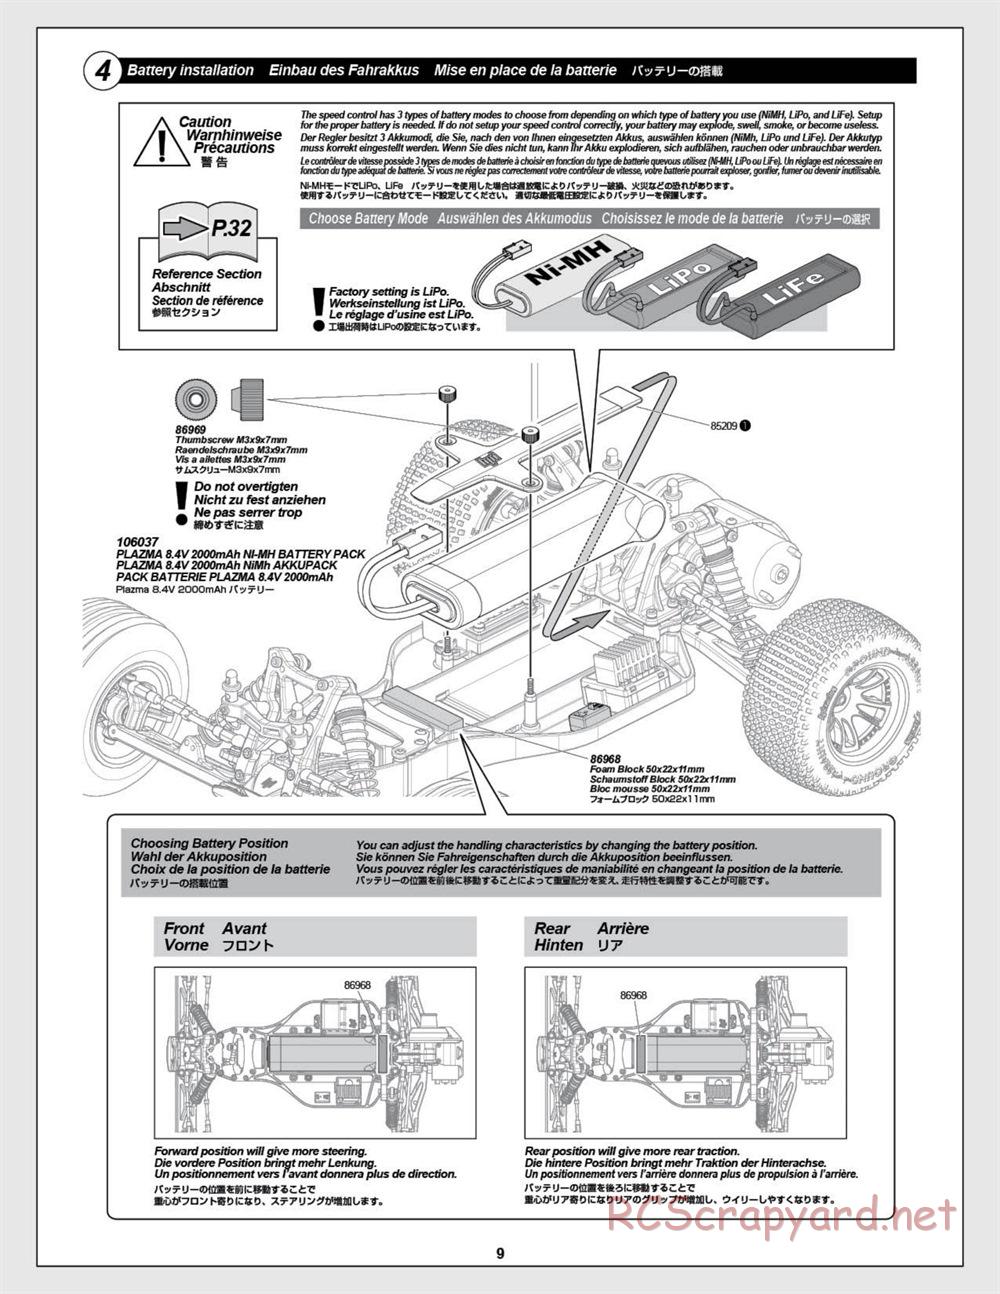 HPI - E-Firestorm-10T - Manual - Page 9